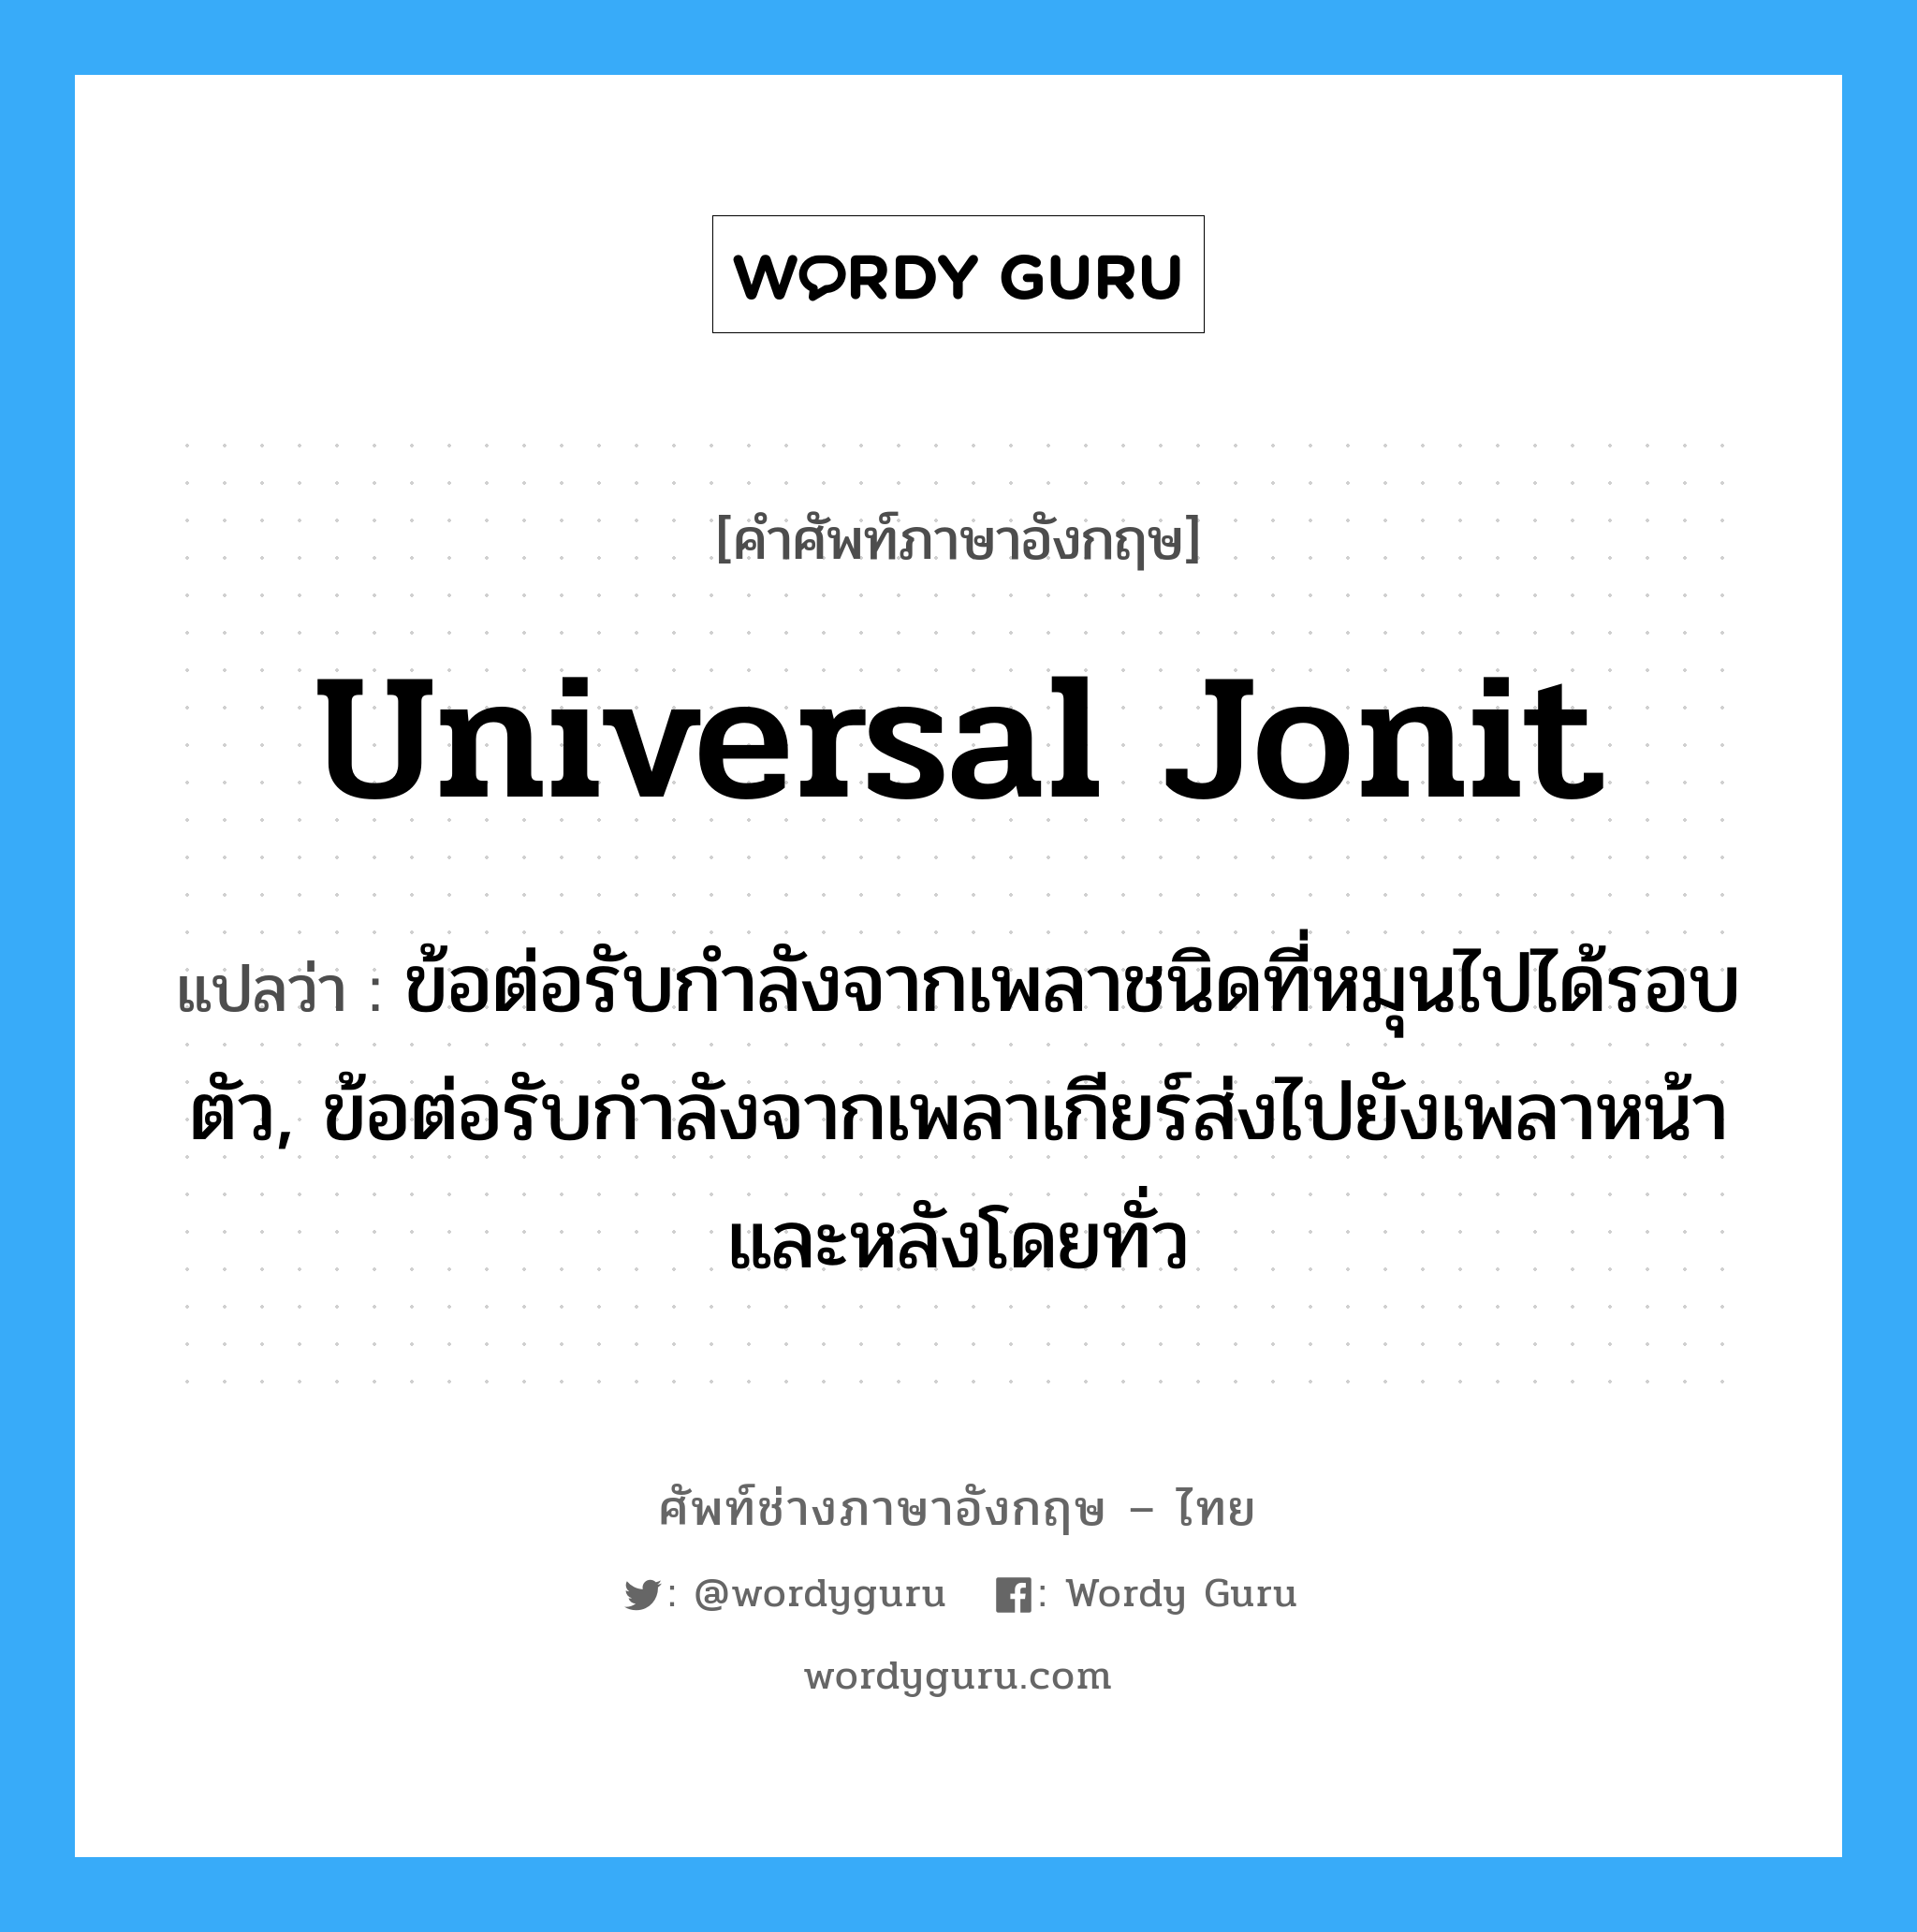 universal jonit แปลว่า?, คำศัพท์ช่างภาษาอังกฤษ - ไทย universal jonit คำศัพท์ภาษาอังกฤษ universal jonit แปลว่า ข้อต่อรับกำลังจากเพลาชนิดที่หมุนไปได้รอบตัว, ข้อต่อรับกำลังจากเพลาเกียร์ส่งไปยังเพลาหน้าและหลังโดยทั่ว